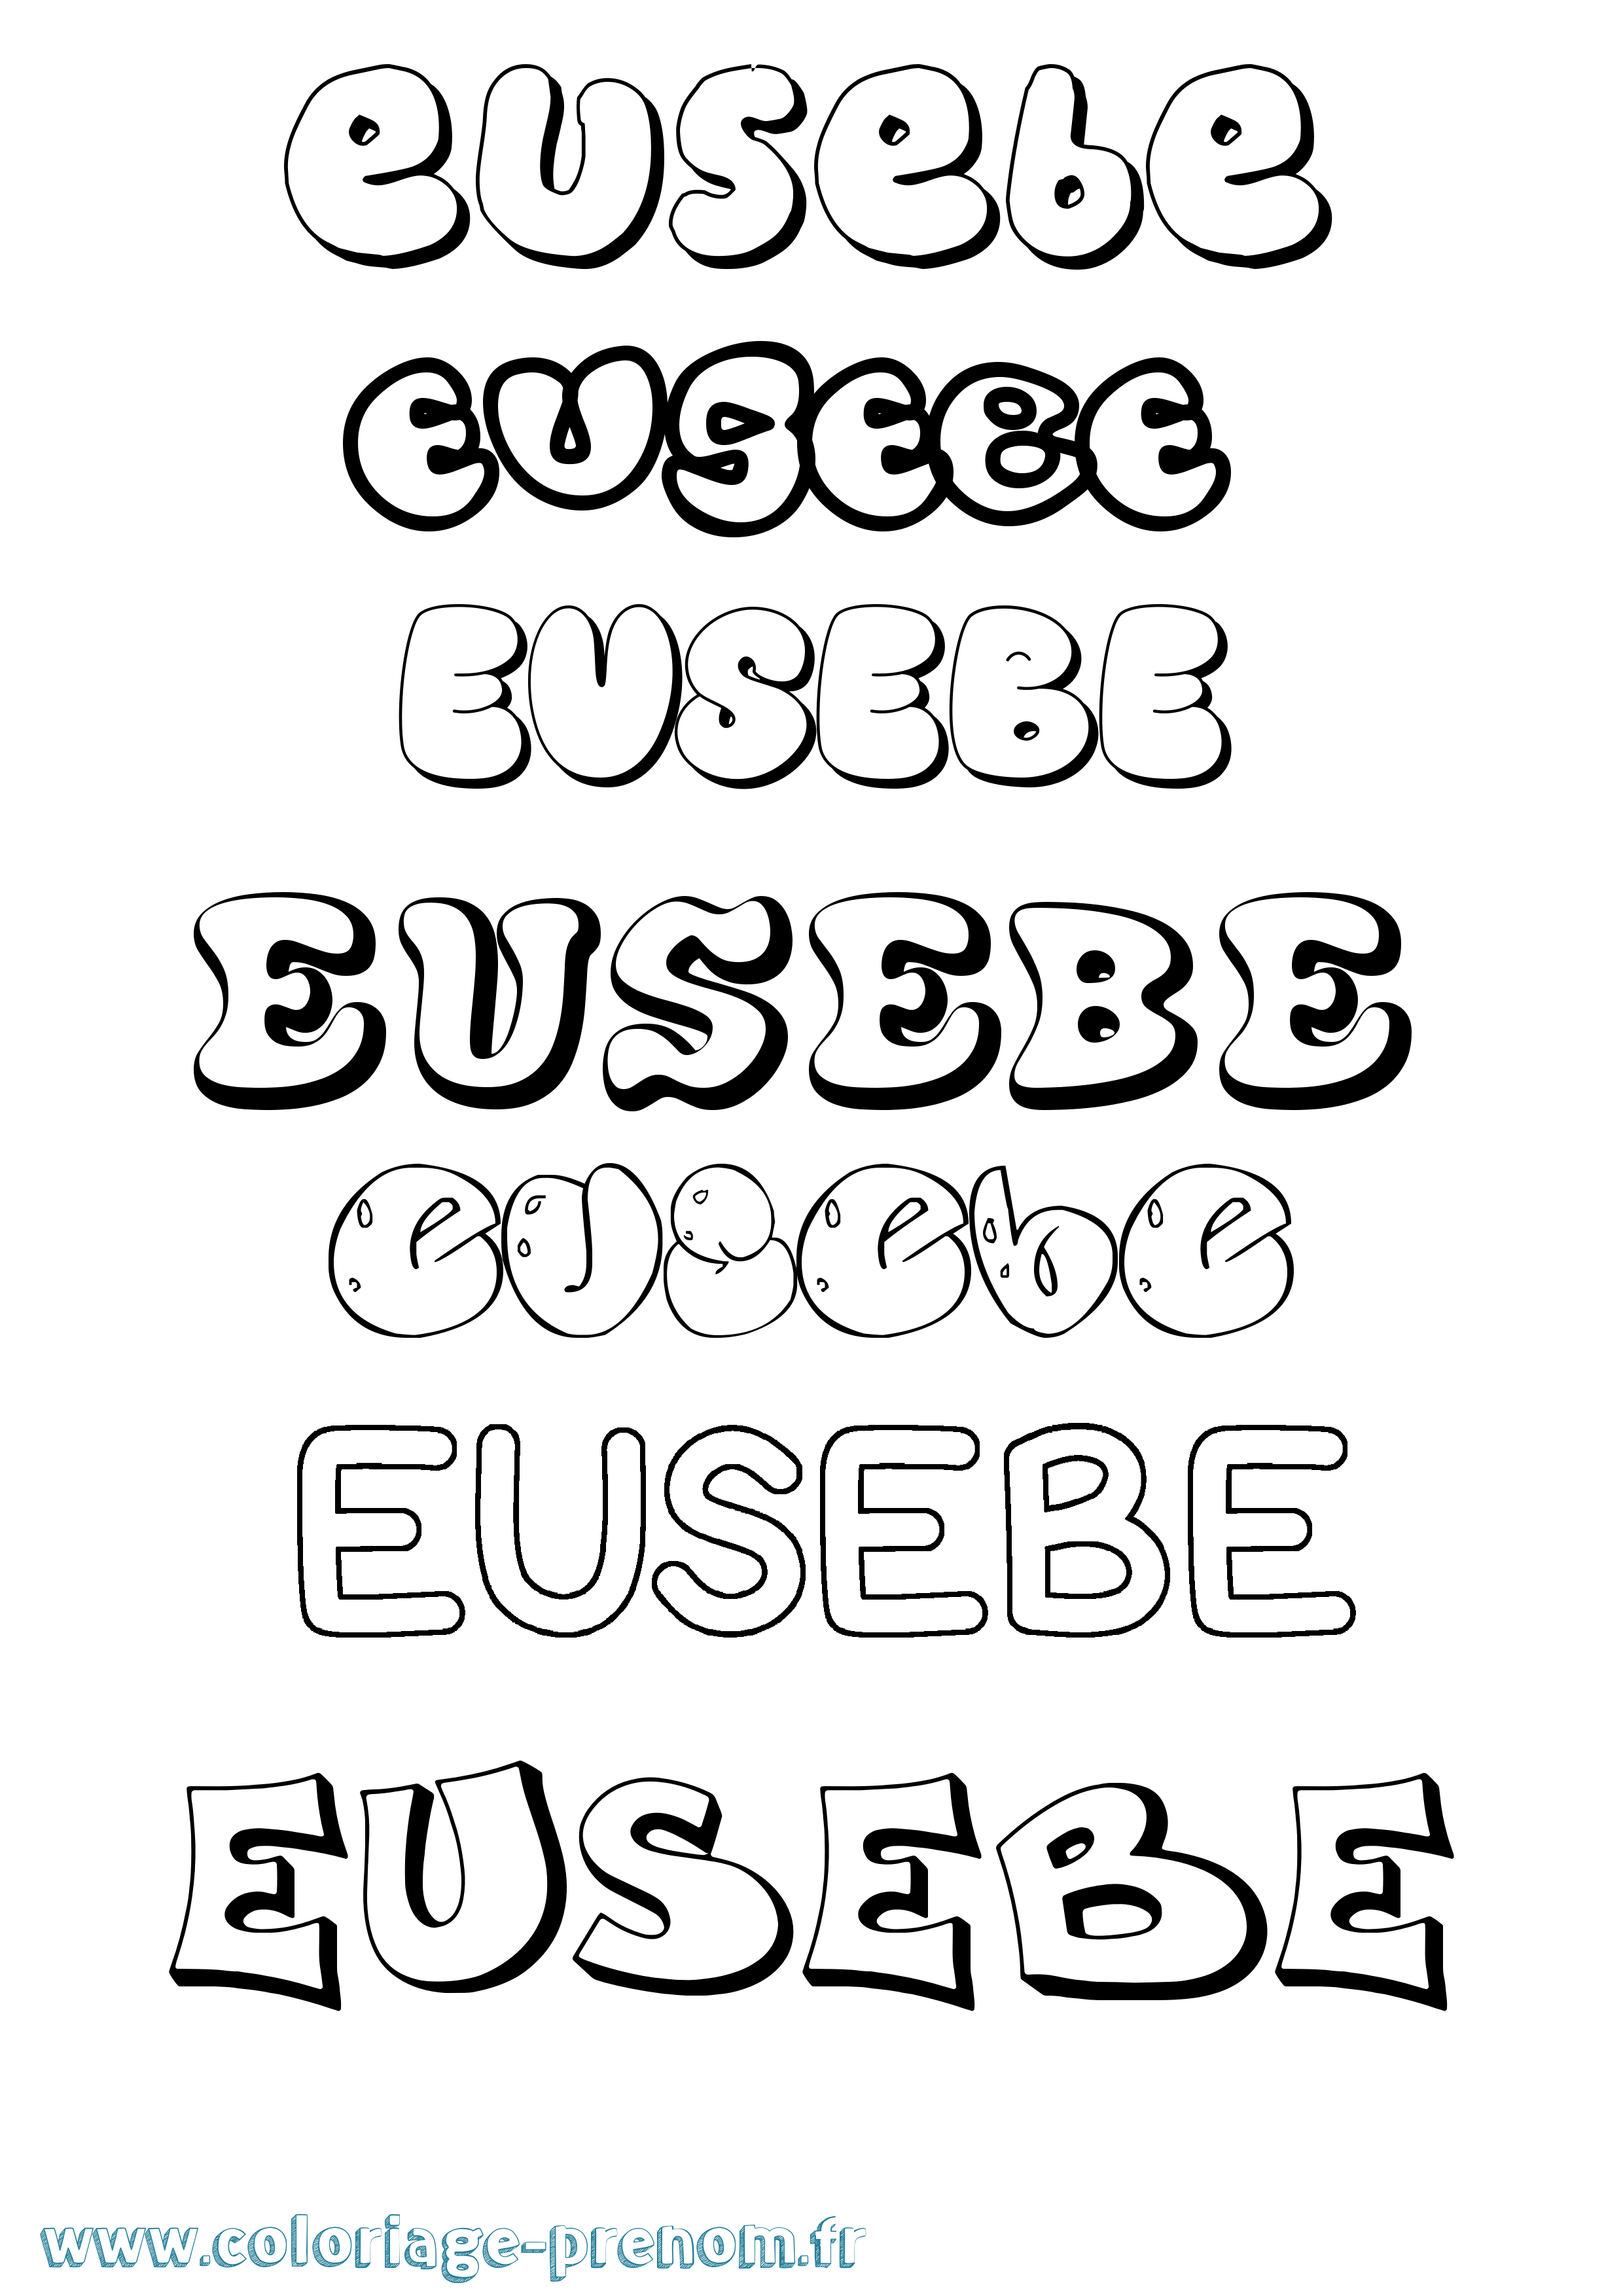 Coloriage prénom Eusebe Bubble